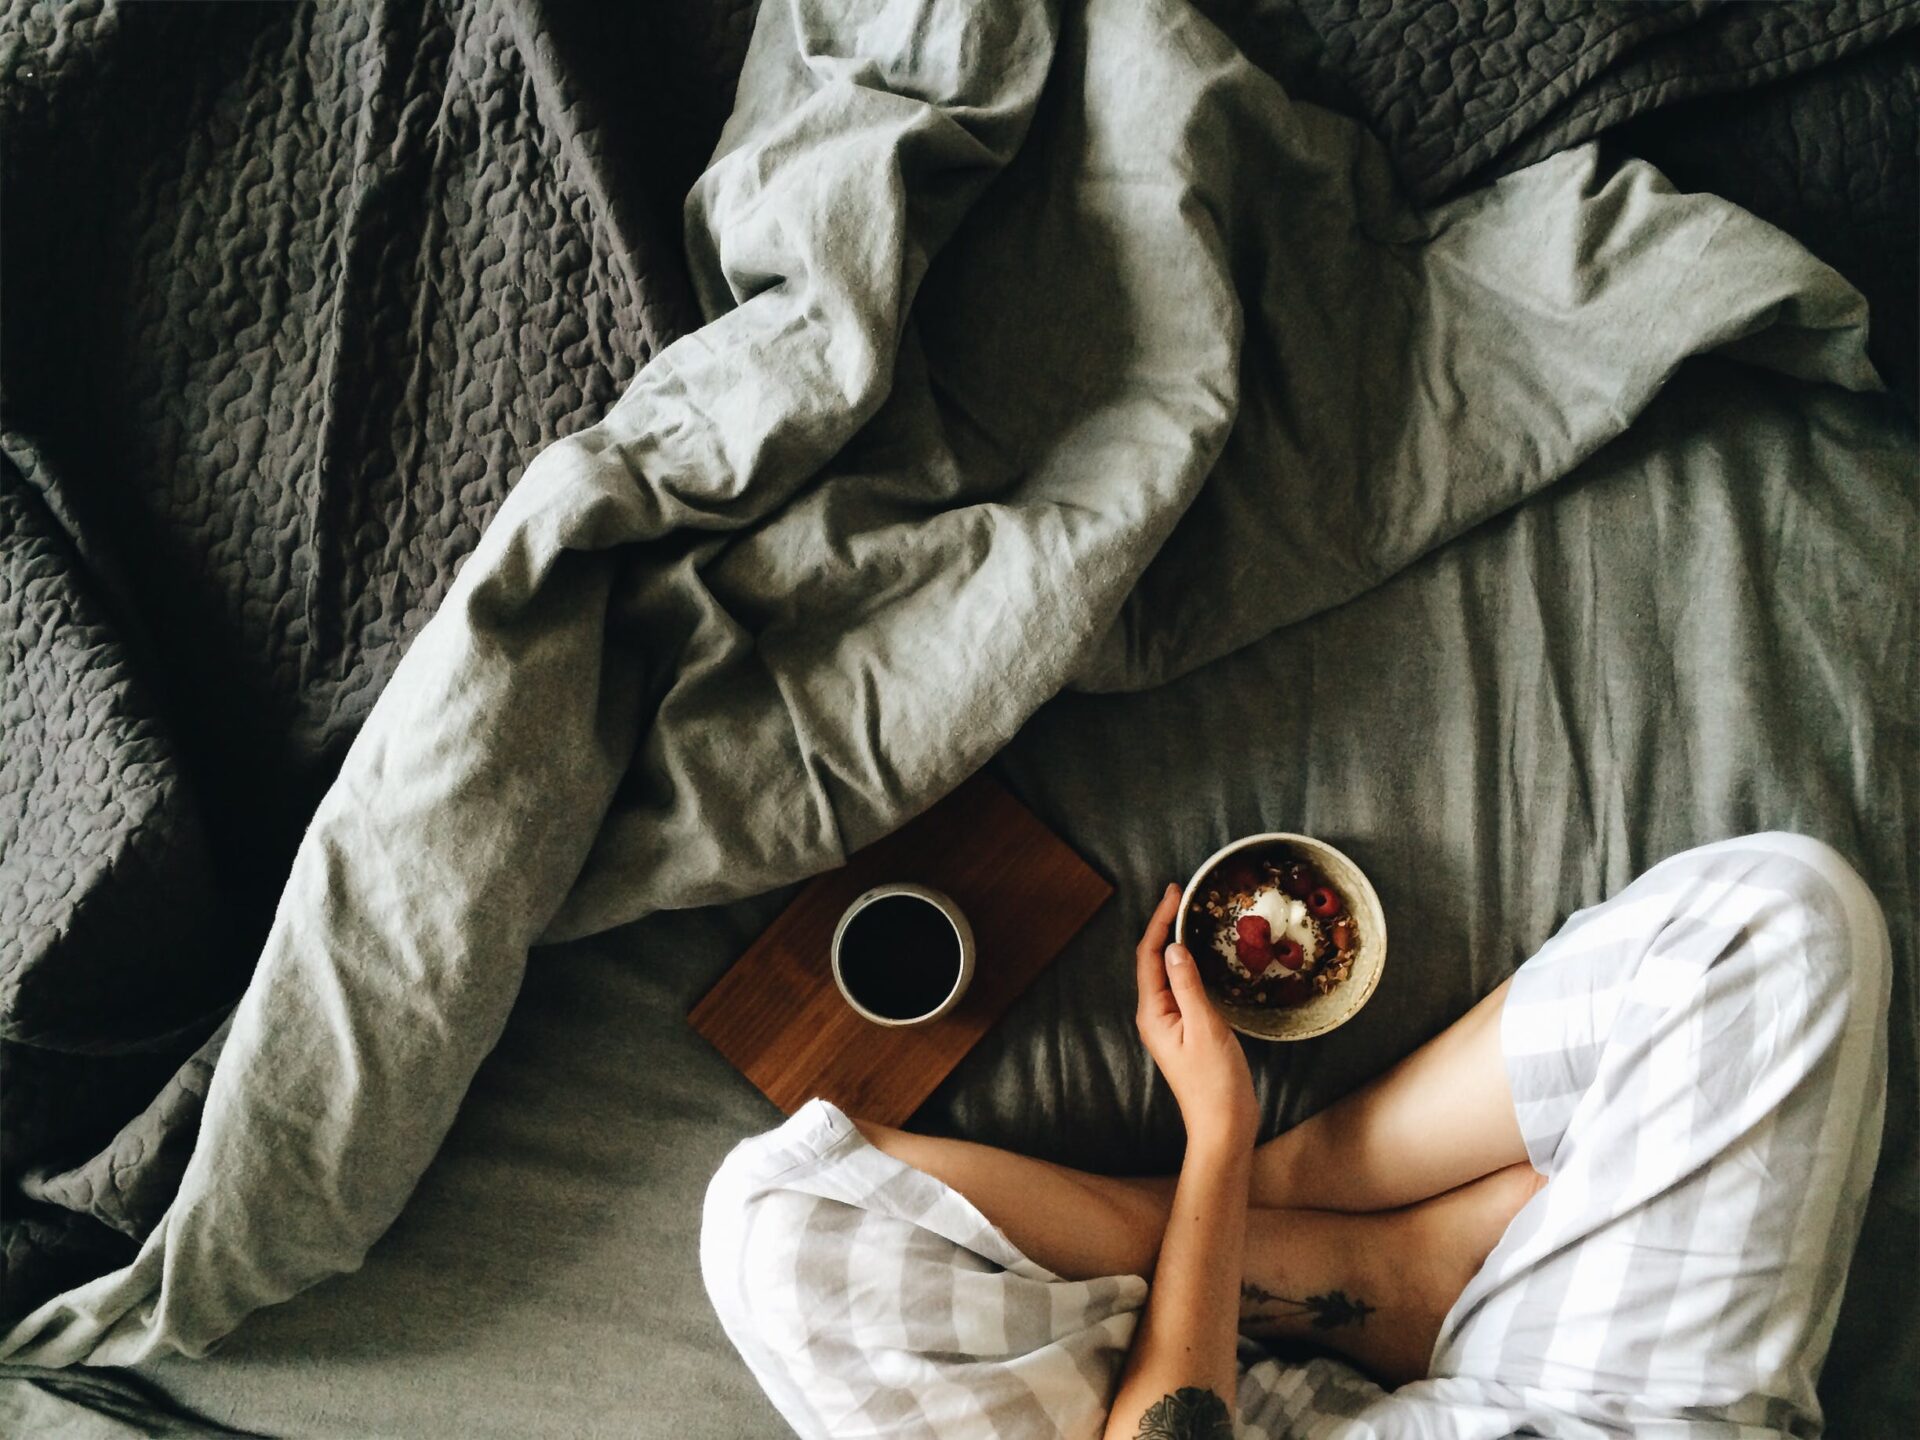 ベッドの上でコーヒーとヨーグルトを食べる人物の写真